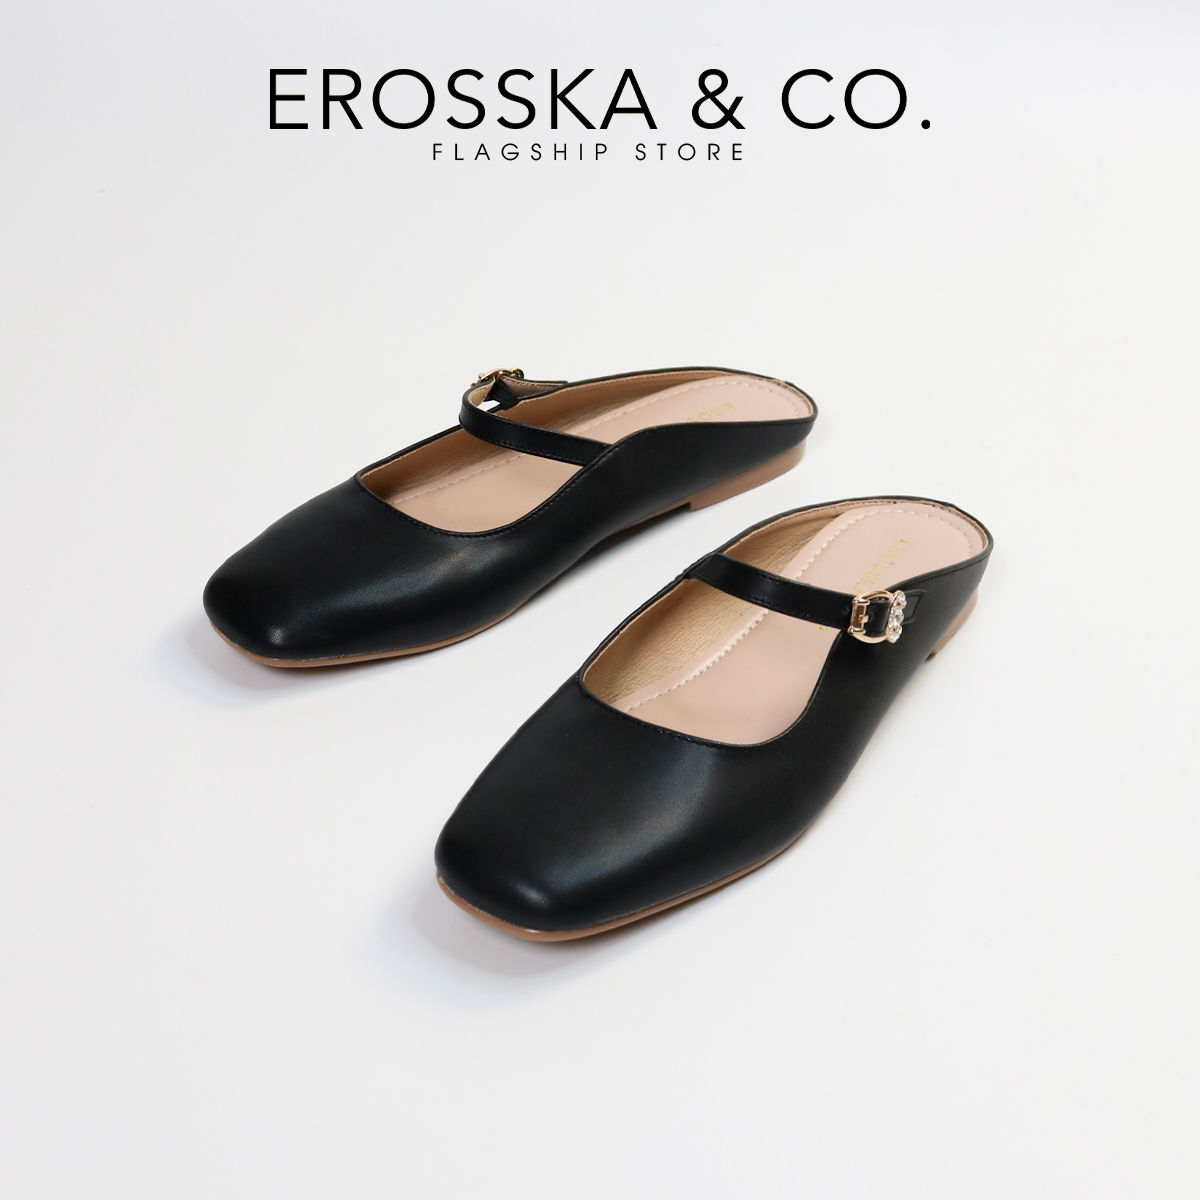 Erosska - Giày nữ đế bệt quai ngang phong cách thanh lịch - EF021